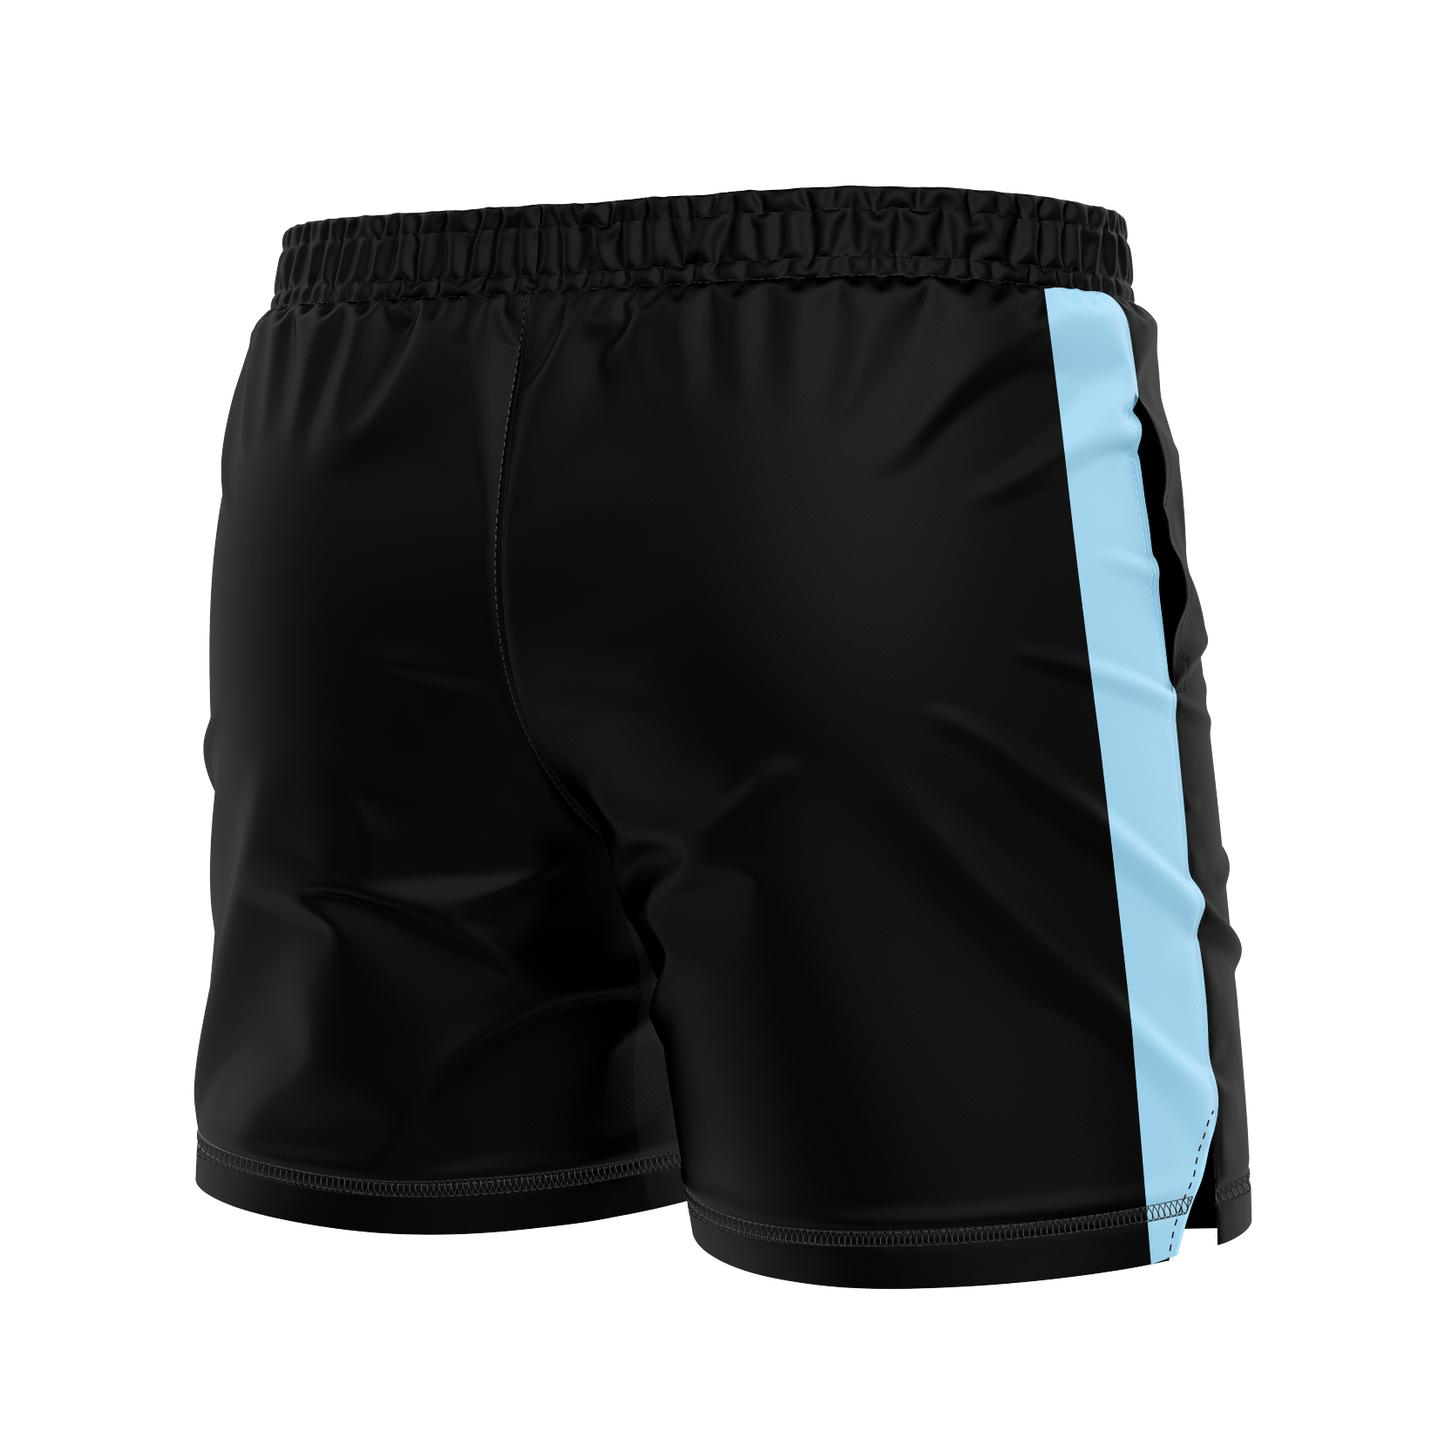 CCFC men's FC shorts La Albicelest, black and blue